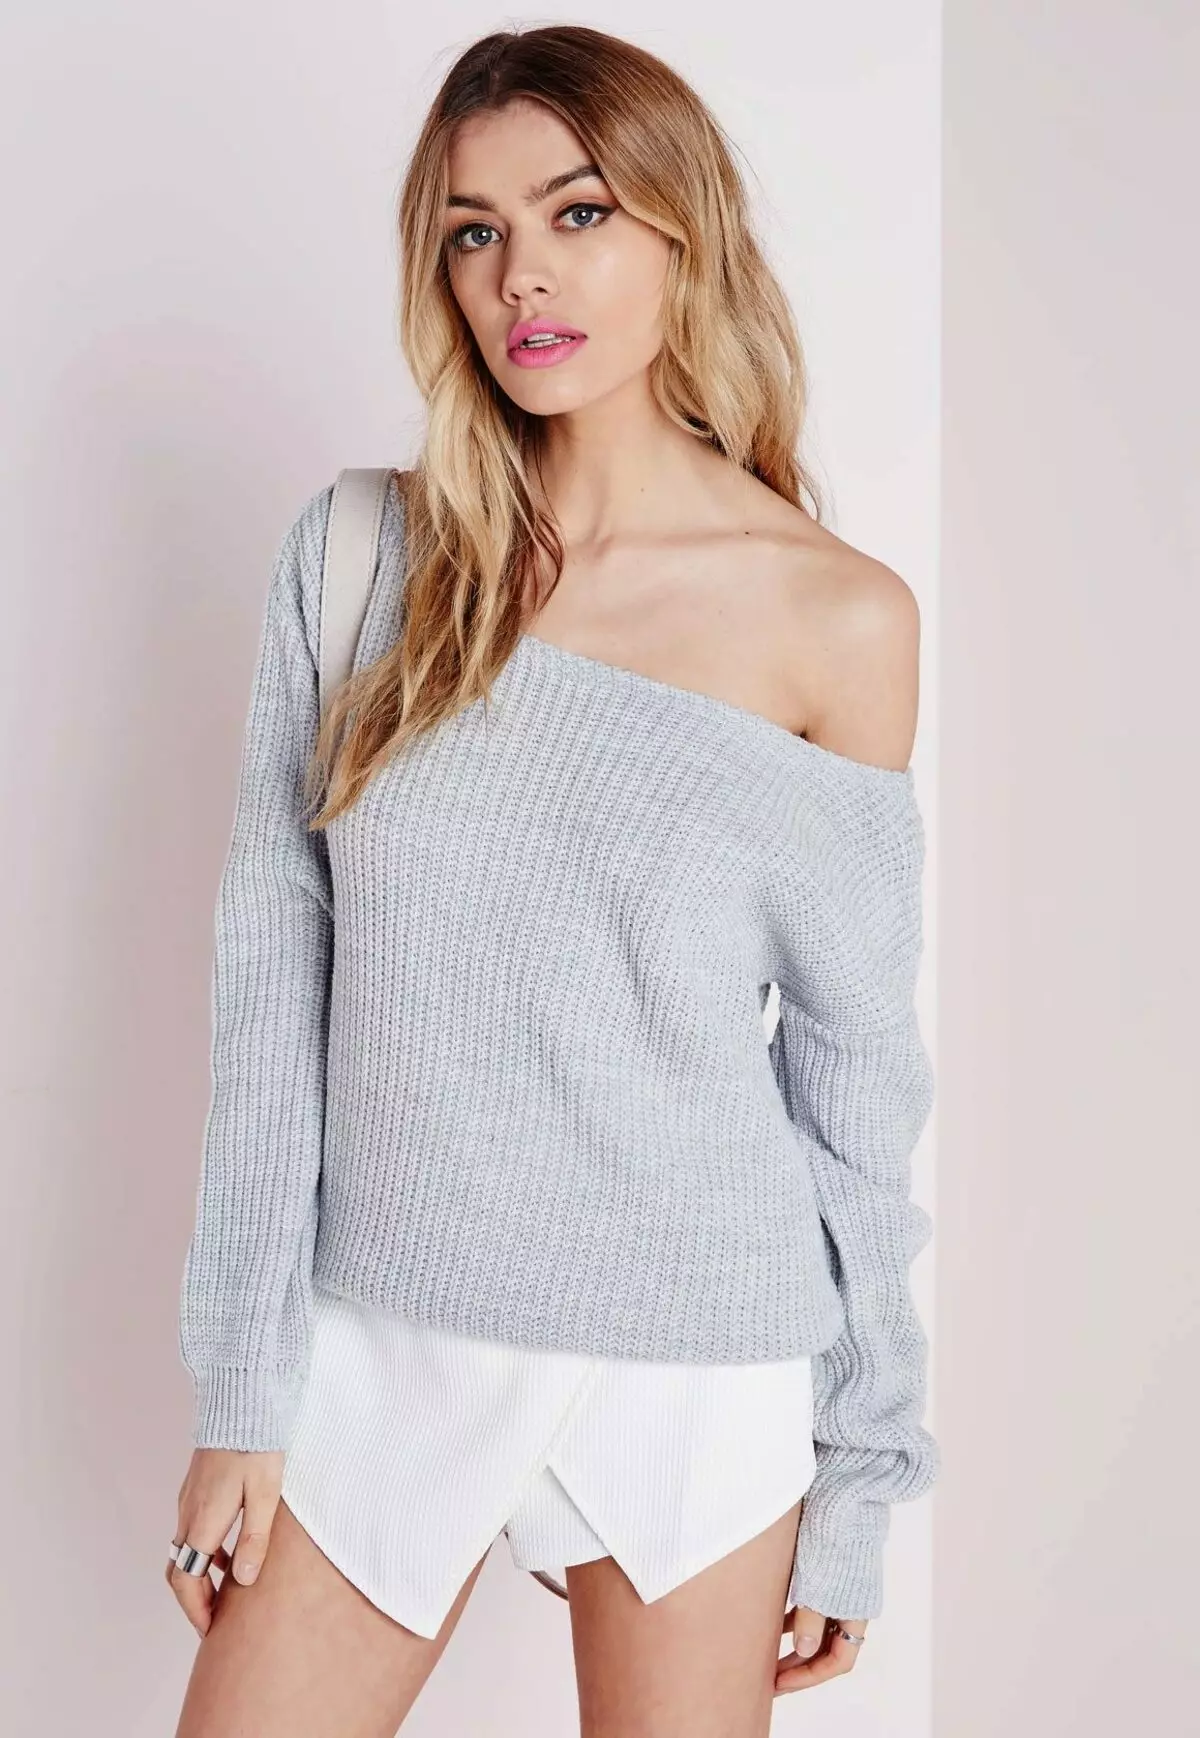 Sweter na jednym ramieniu (46 zdjęć), sweter z rozdrobnionym ramieniem 1008_6